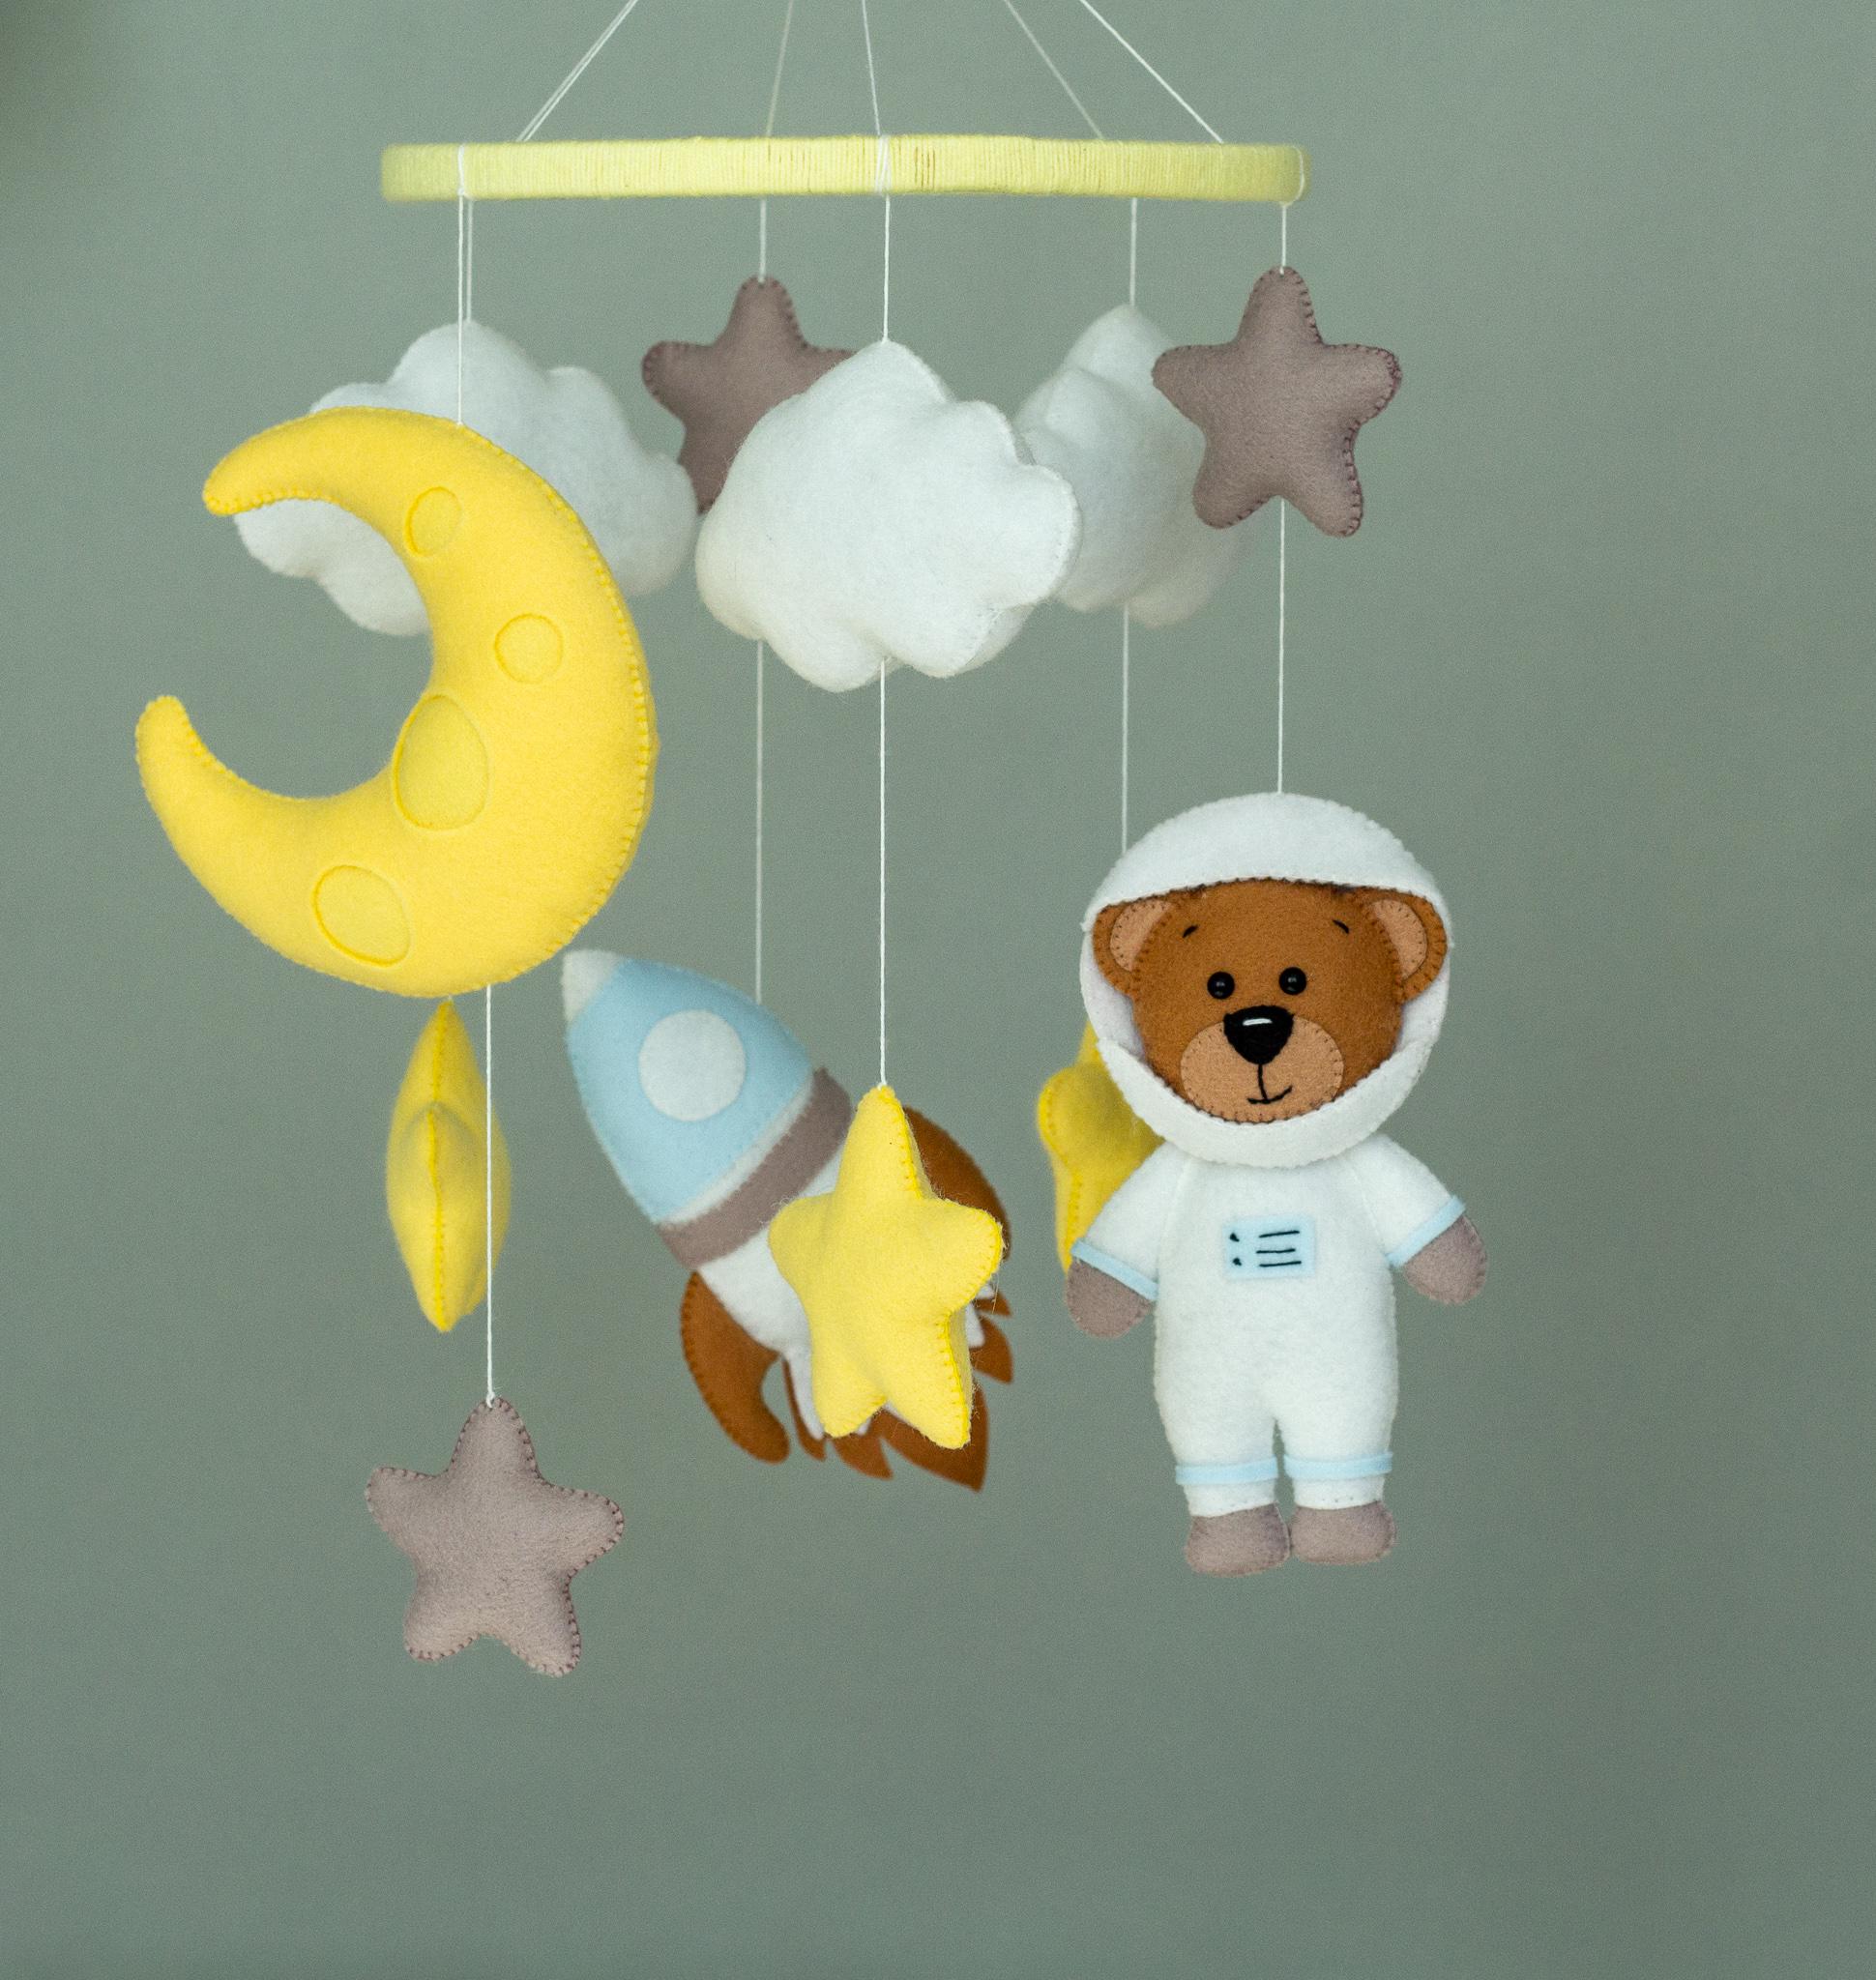 BabyPlus - товары для детей по оптовым ценам, игрушки, канцтовары, спортивные товары, одежда.